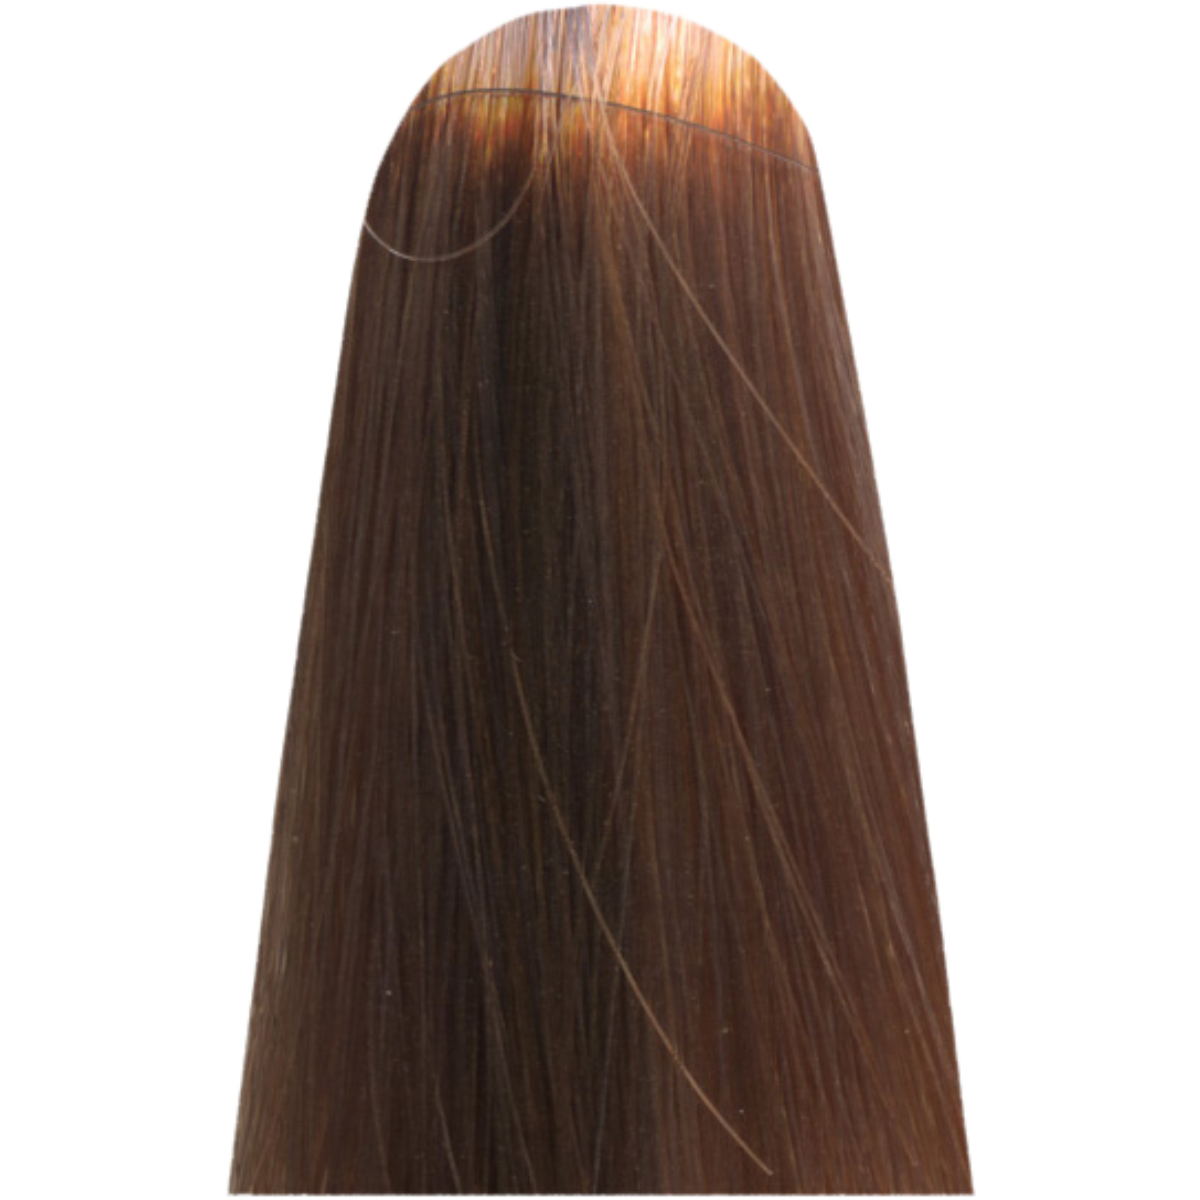 צבע שיער LIGHT.02 IRIDESCENT מג`ירל בוהק MAJIREL GLOW צבע לשיער 50 גרם לוריאל